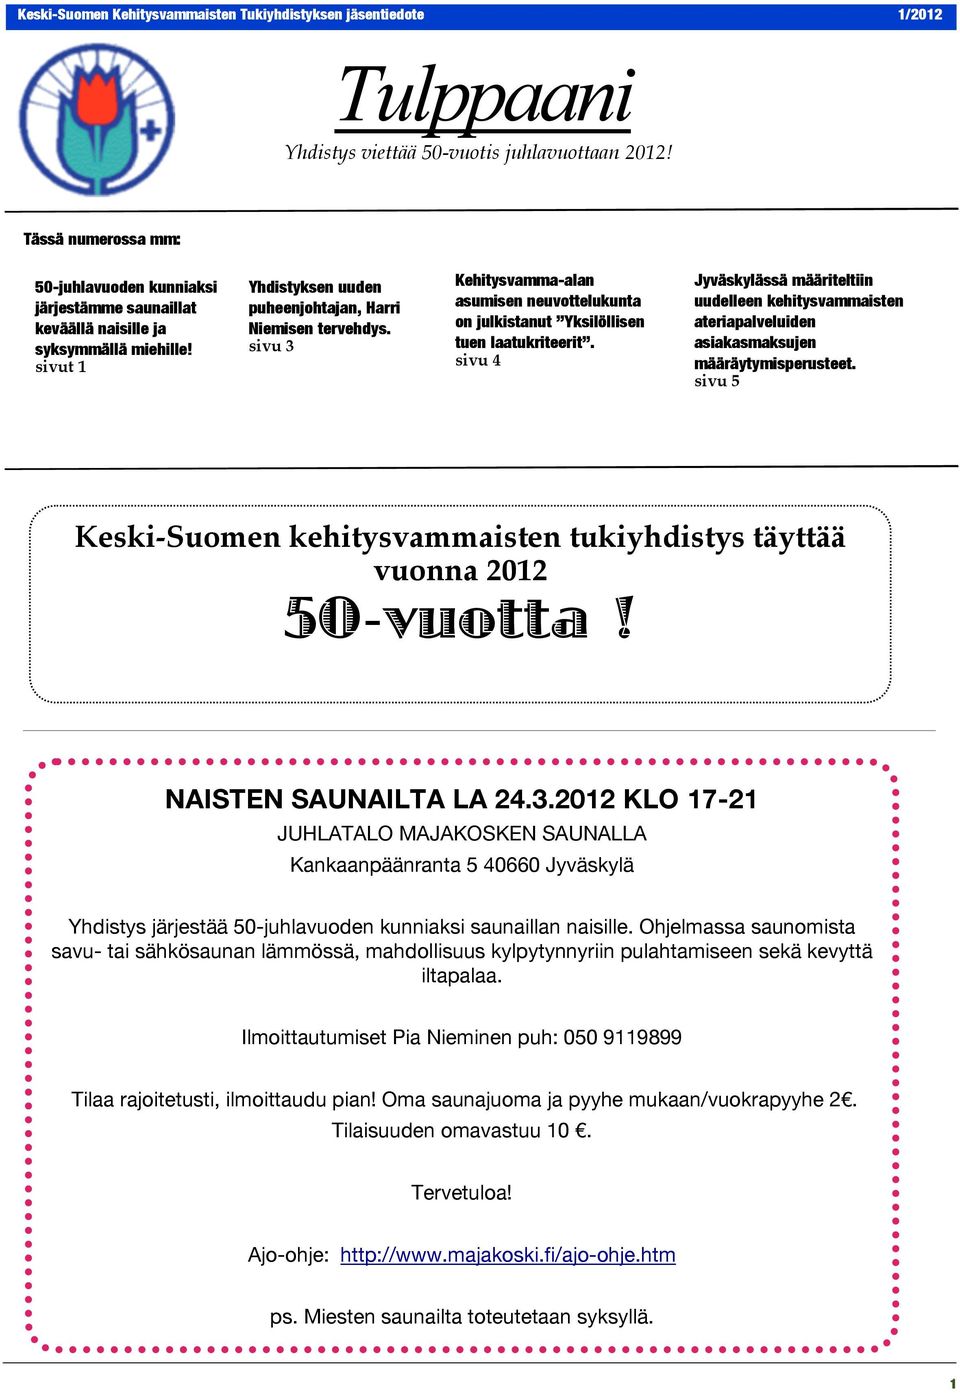 sivu 4 Jyväskylässä määriteltiin uudelleen kehitysvammaisten ateriapalveluiden asiakasmaksujen määräytymisperusteet. sivu 5 Keski-Suomen kehitysvammaisten tukiyhdistys täyttää vuonna 2012 50-vuotta!